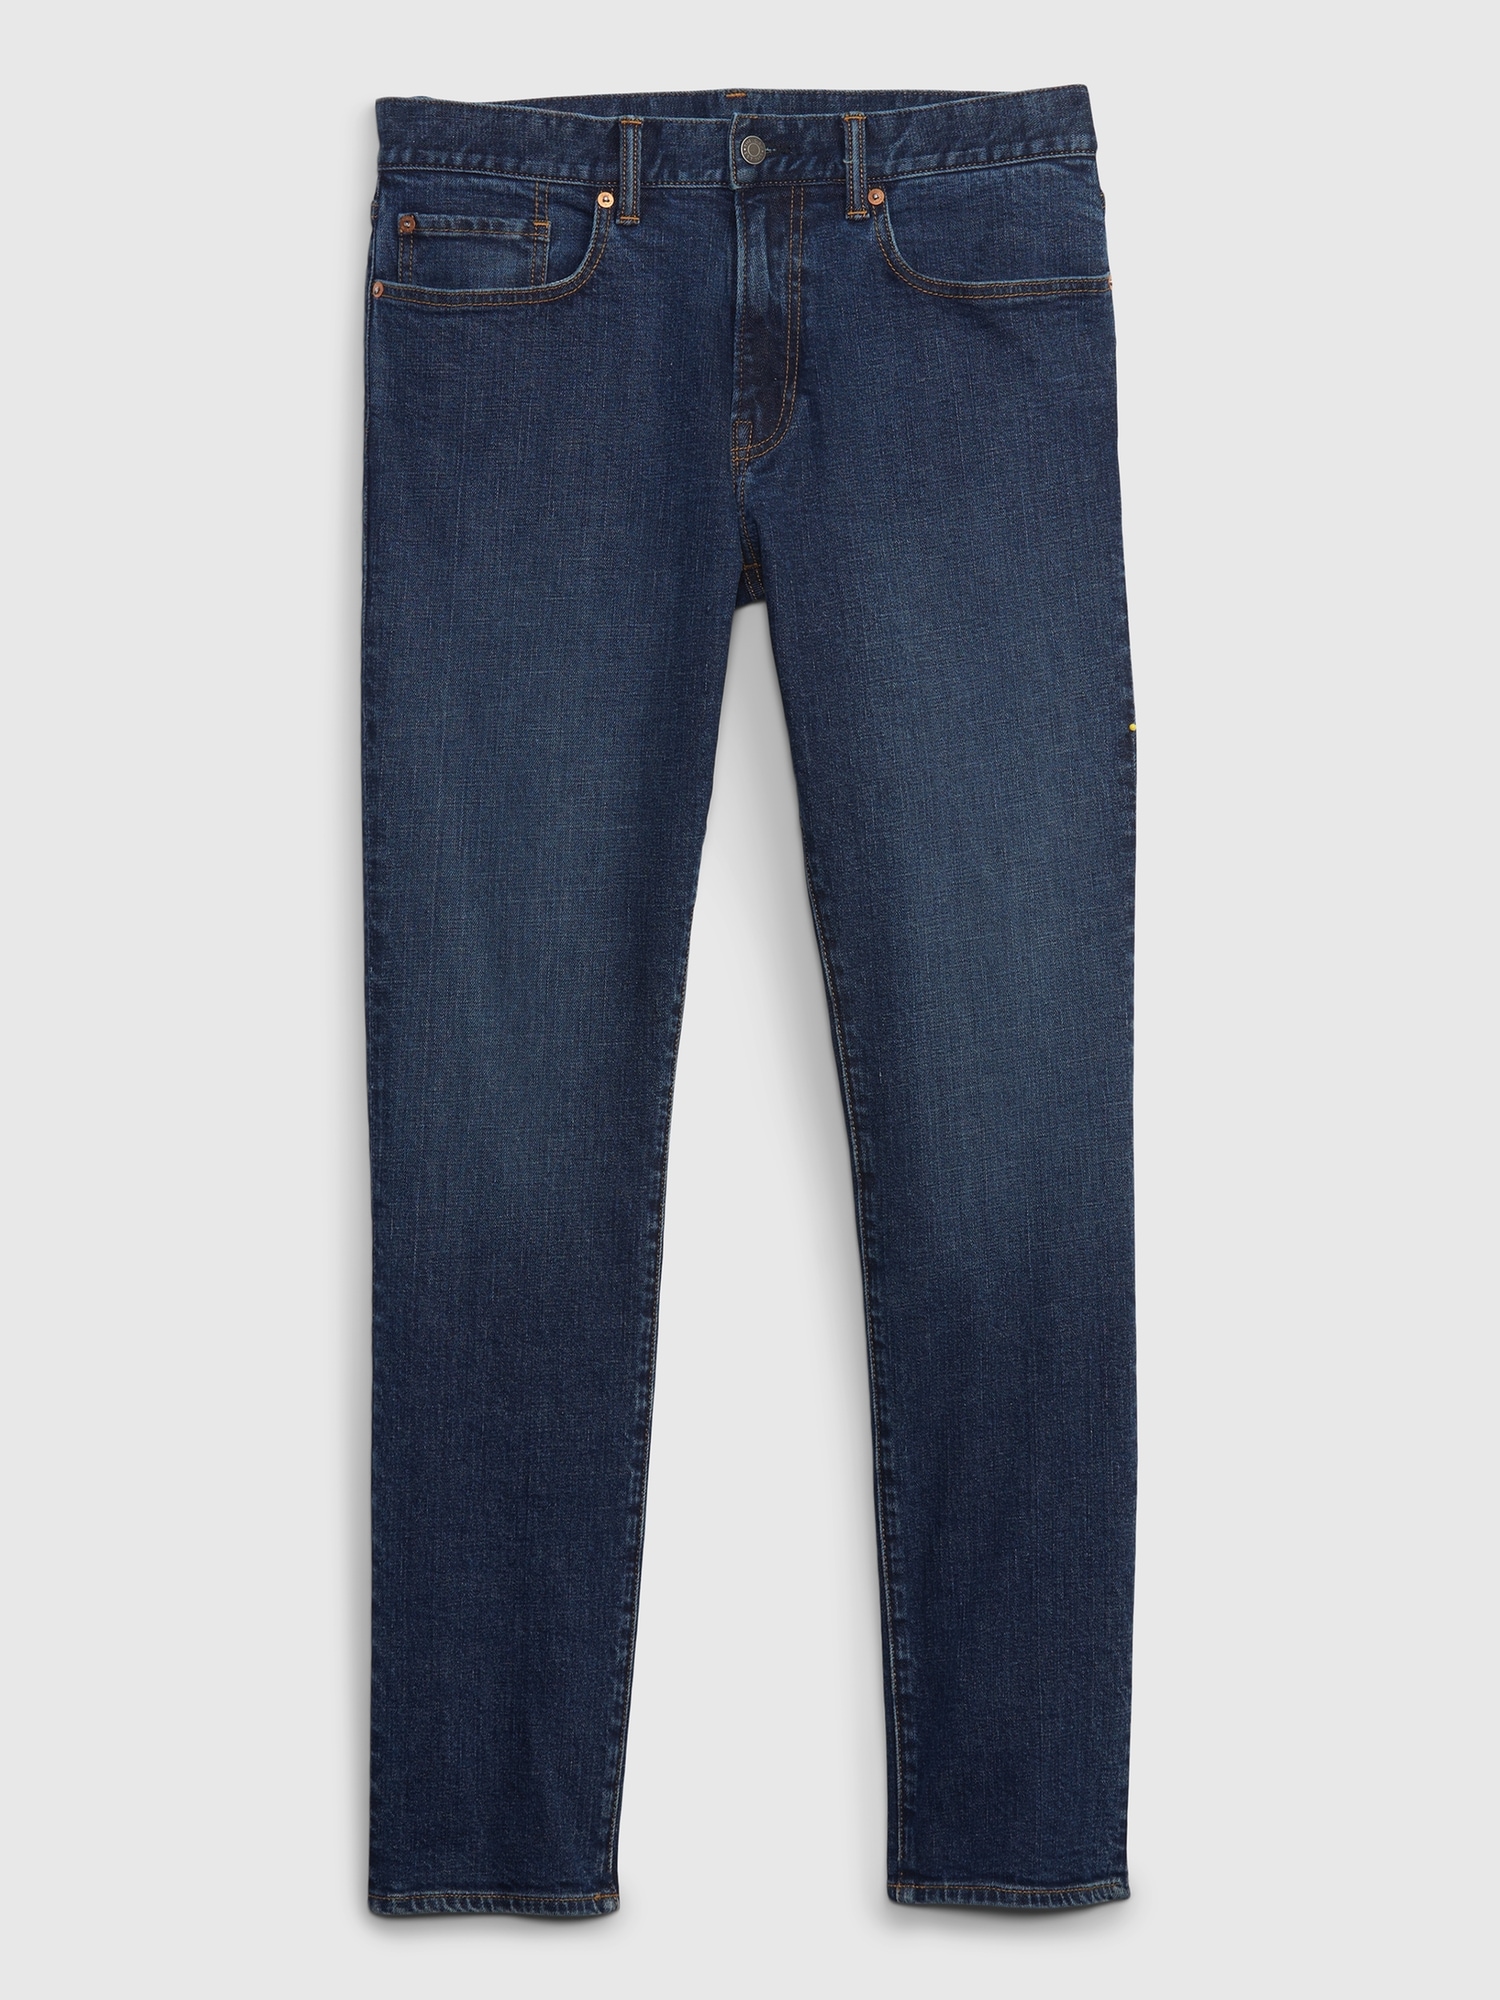 Gap Denim Soft Wear 30x32 (MEASURES 29X32) Slim Gray Stretch Jeans